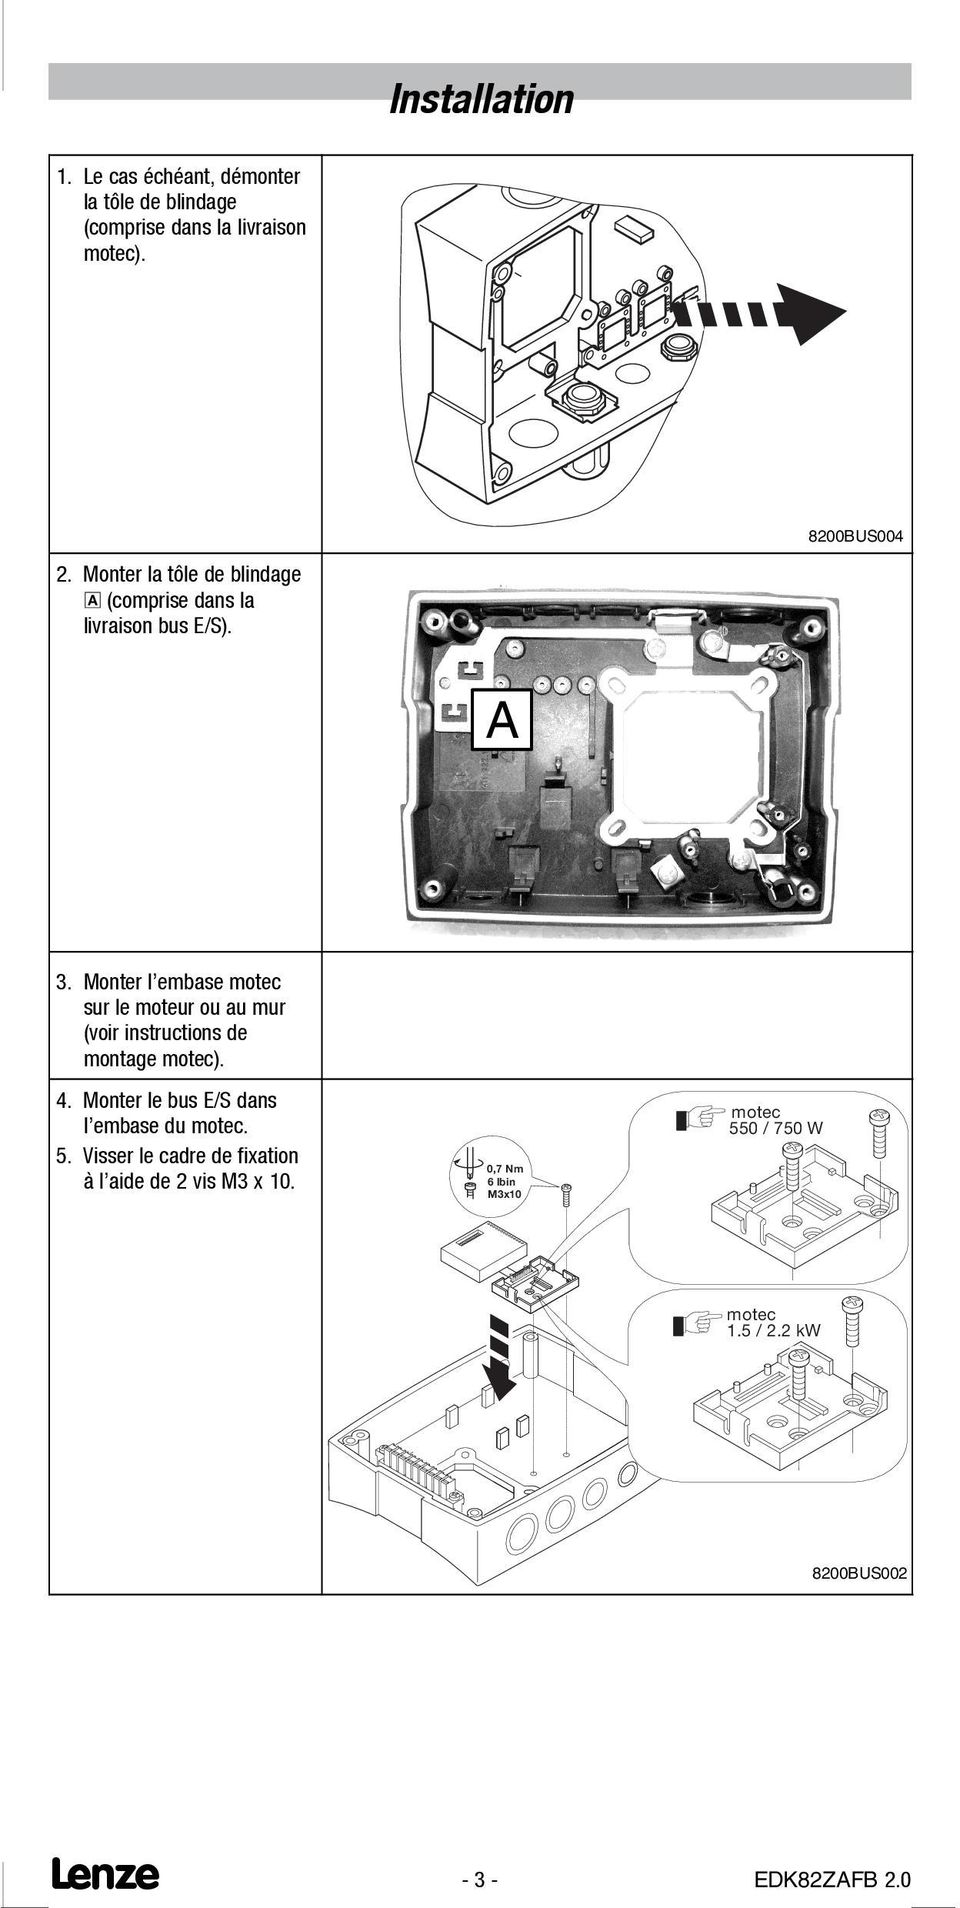 Monter l embase motec sur le moteur ou au mur (voir instructions de montage motec). 4.